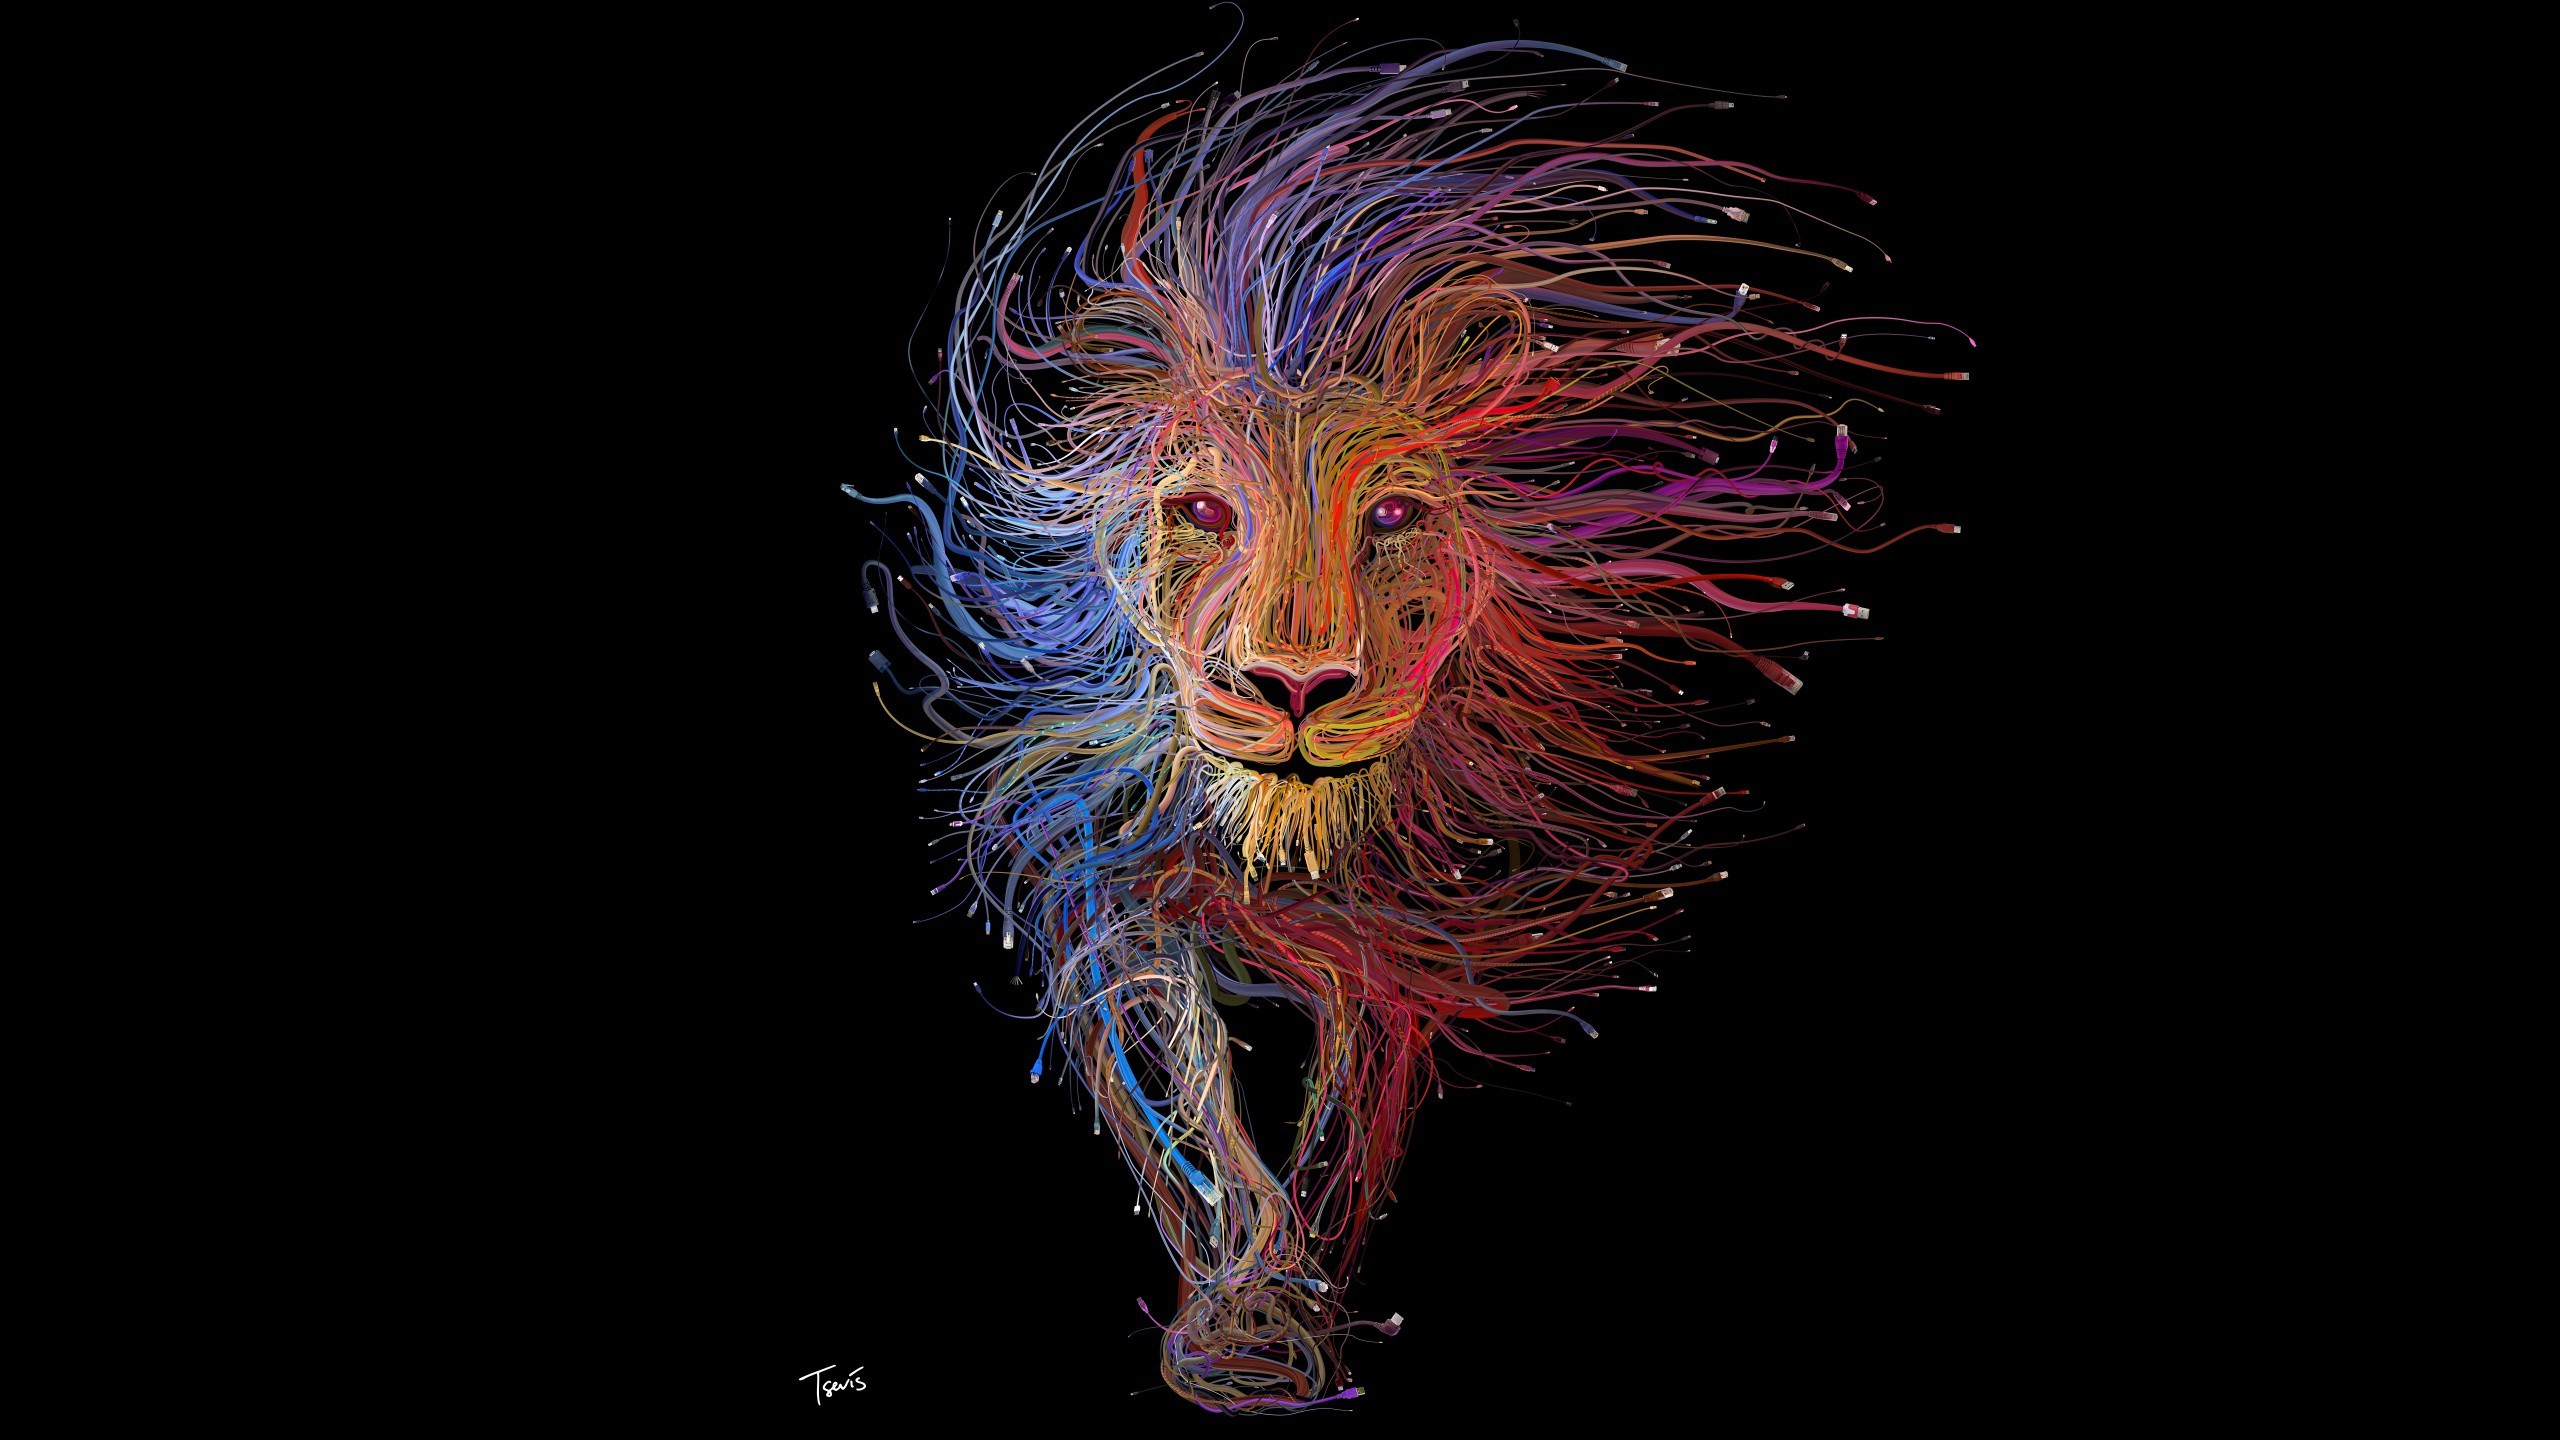 2560x1440 Abstract Lion Design Wallpaper. Iphone 4s Bezel Walldevil